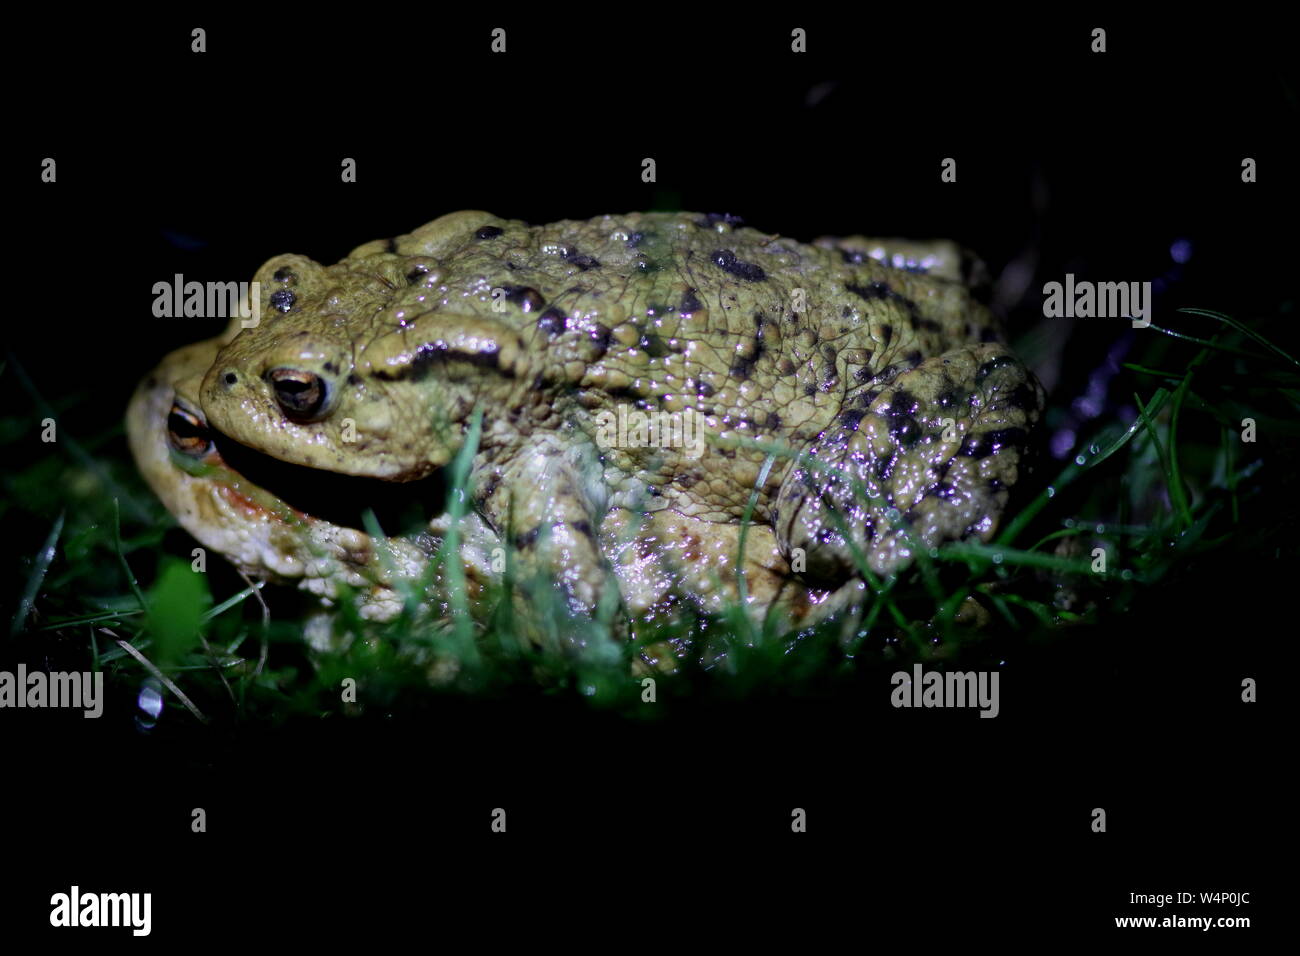 Erdkröten in diesem Frühling passende Körperhaltung während der Brutzeit verriegelt, diese warty Amphibien sind eine britische Nacht Tier Stockfoto